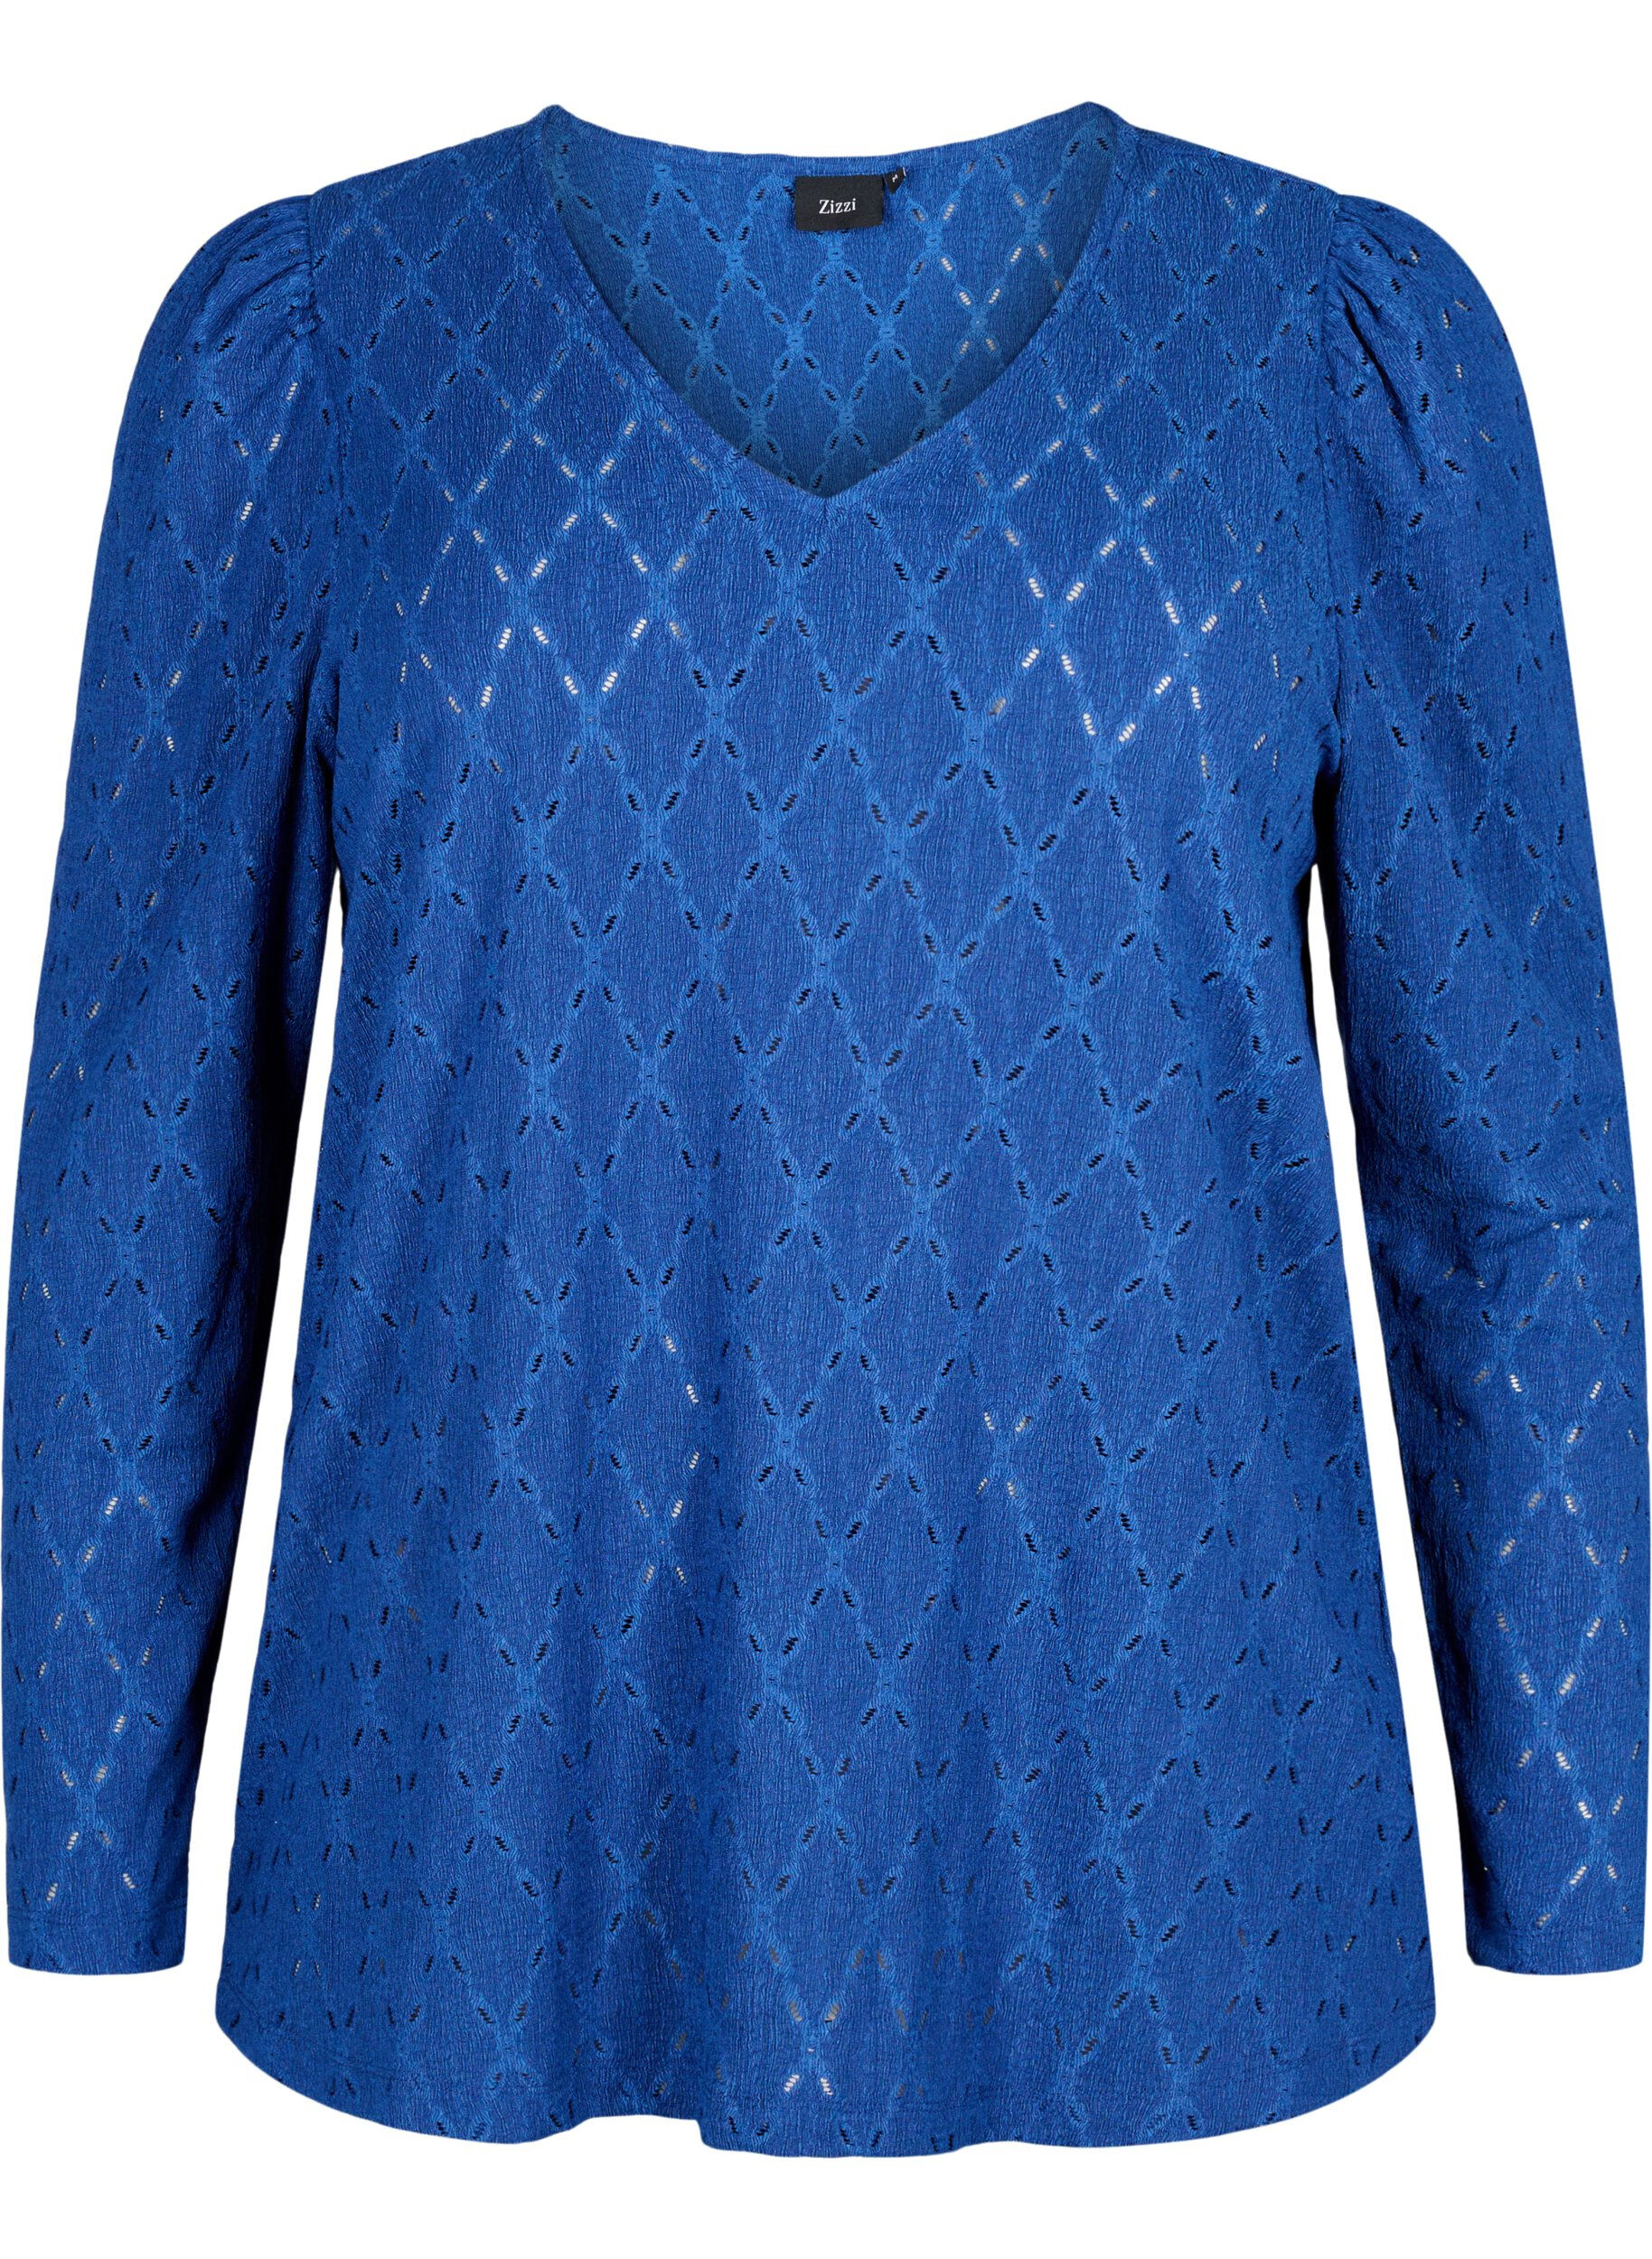 V-neck blouse with hole pattern - Blue - Sz. 42-64 - Zizzifashion